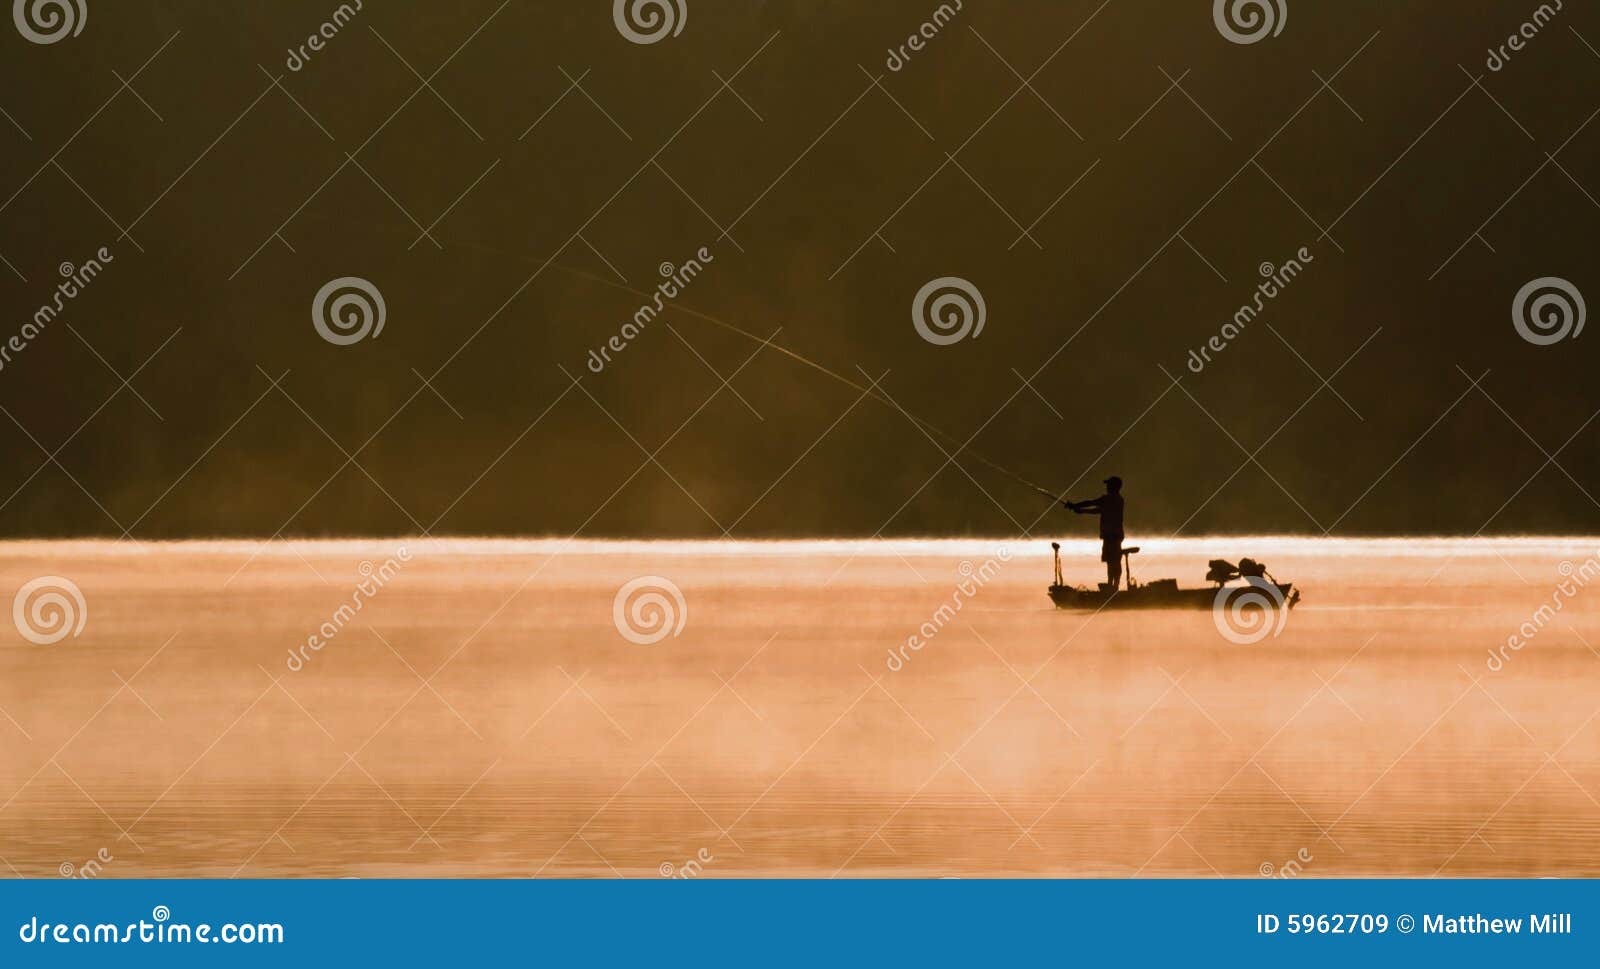 one angler fishing on a lake